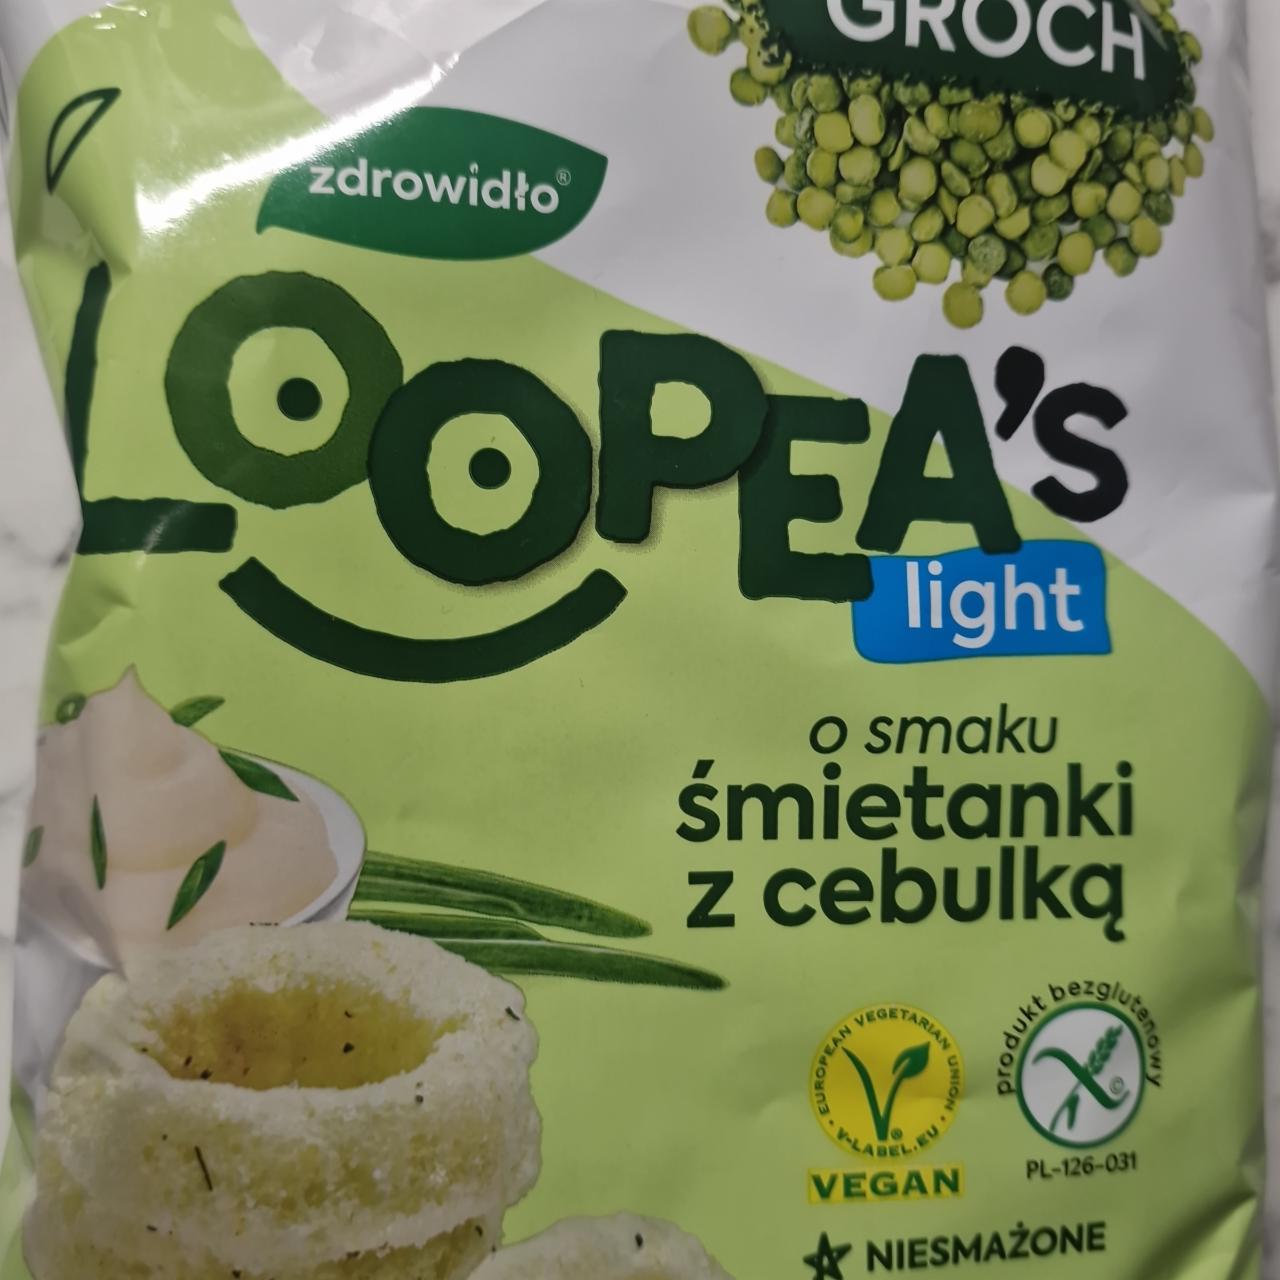 Zdjęcia - Loopea's light o smaku śmietanki z cebulką zdrowidło